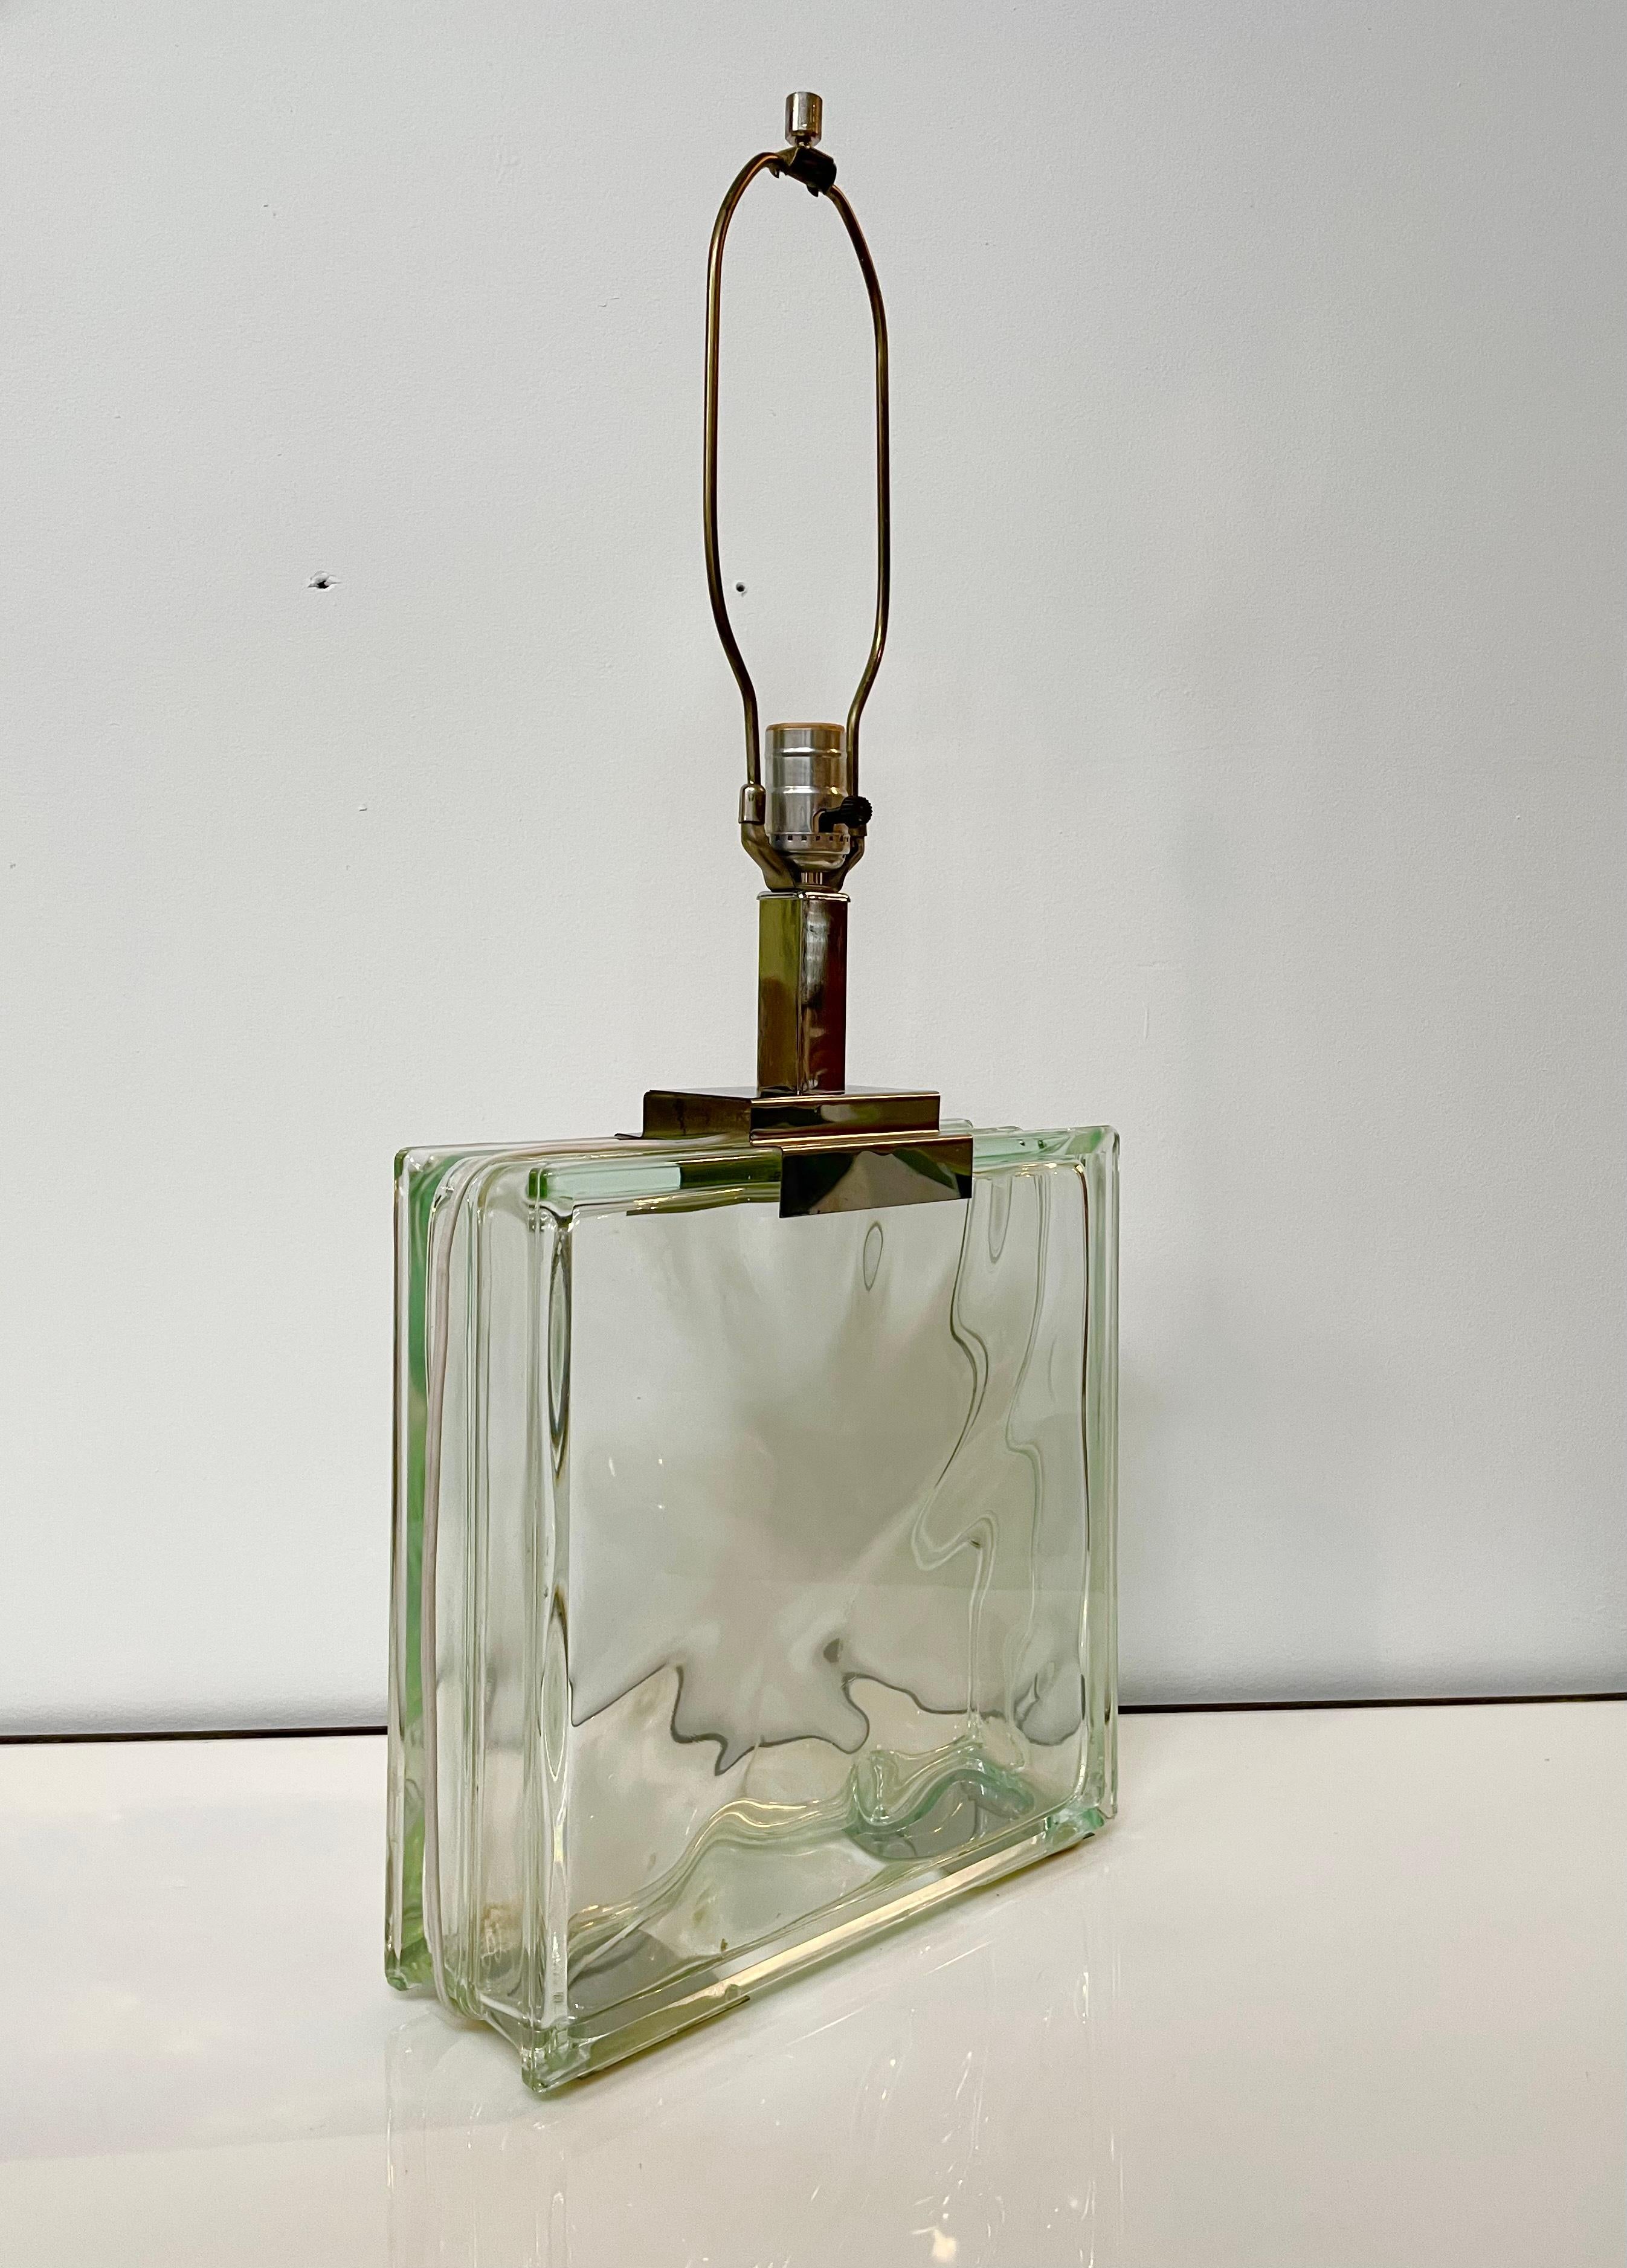 Une lampe de table de belle facture produite par Raymor vers les années 1970. Il présente une grande base en verre avec des détails chromés. Le câblage est bon et il est testé et fonctionne. L'abat-jour n'est pas inclus, seulement la base de la